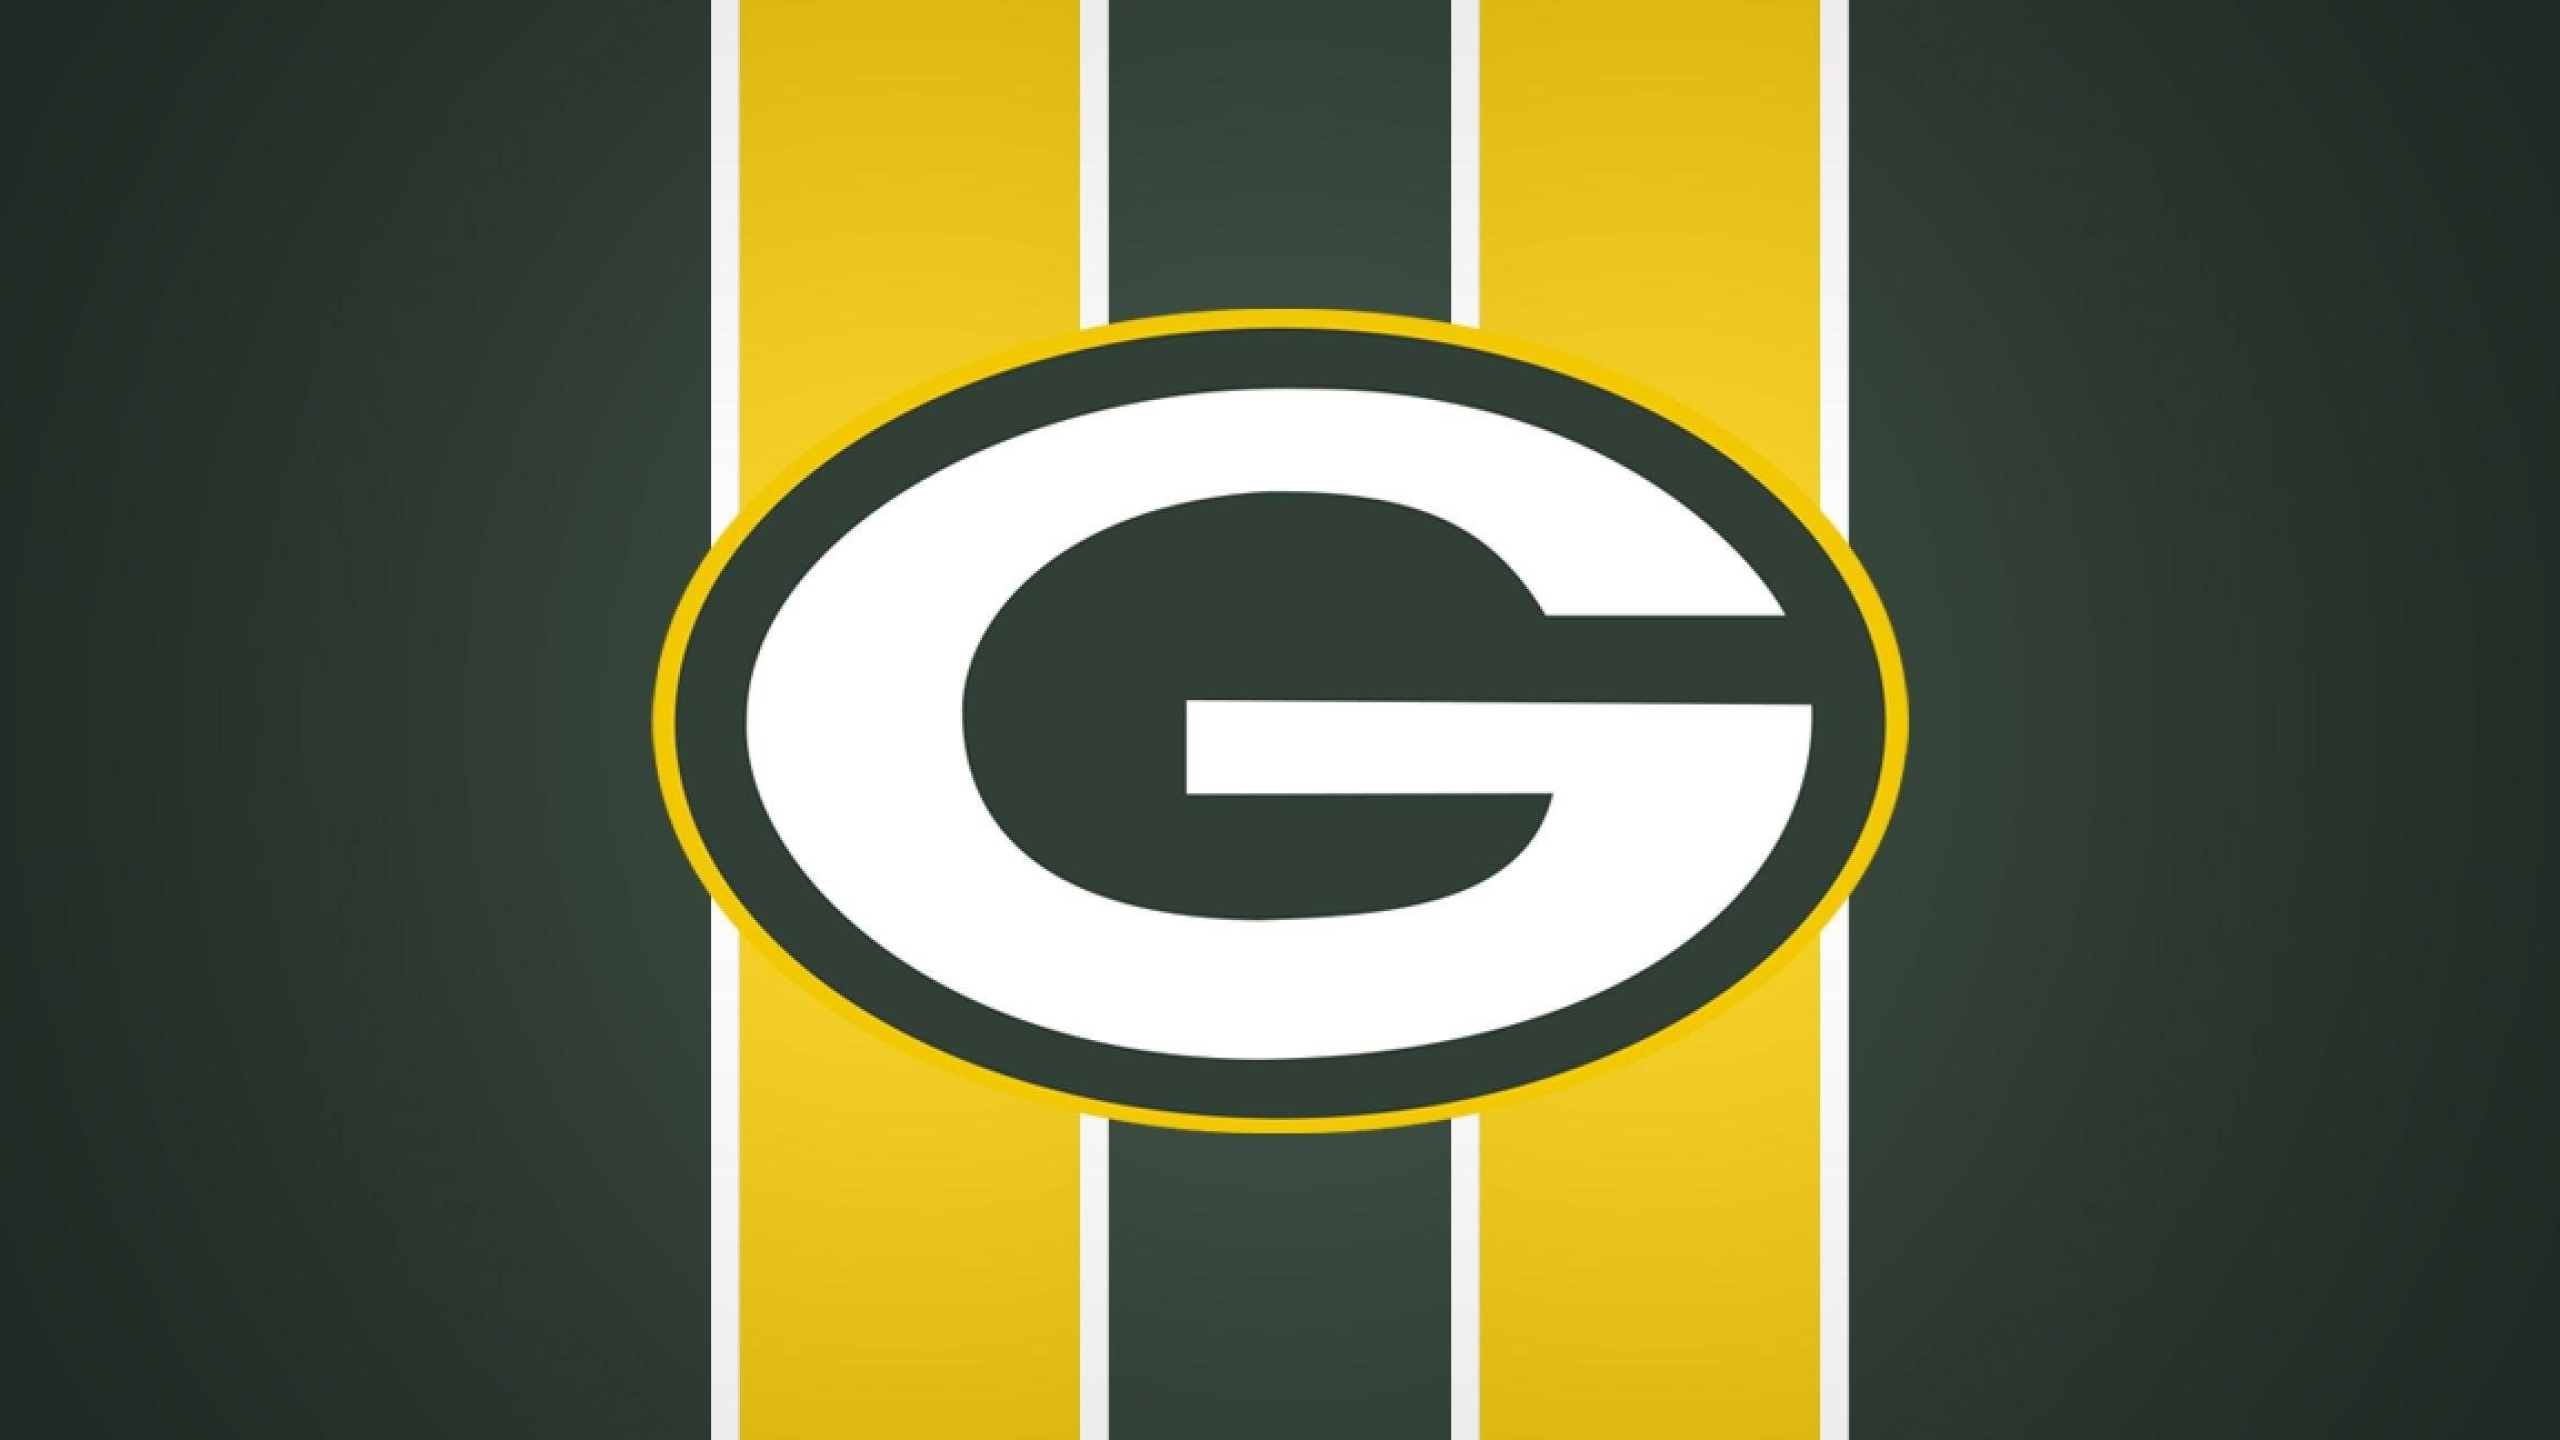 Green Bay Packers, 4K wallpapers, Football team, Packers pride, 2560x1440 HD Desktop